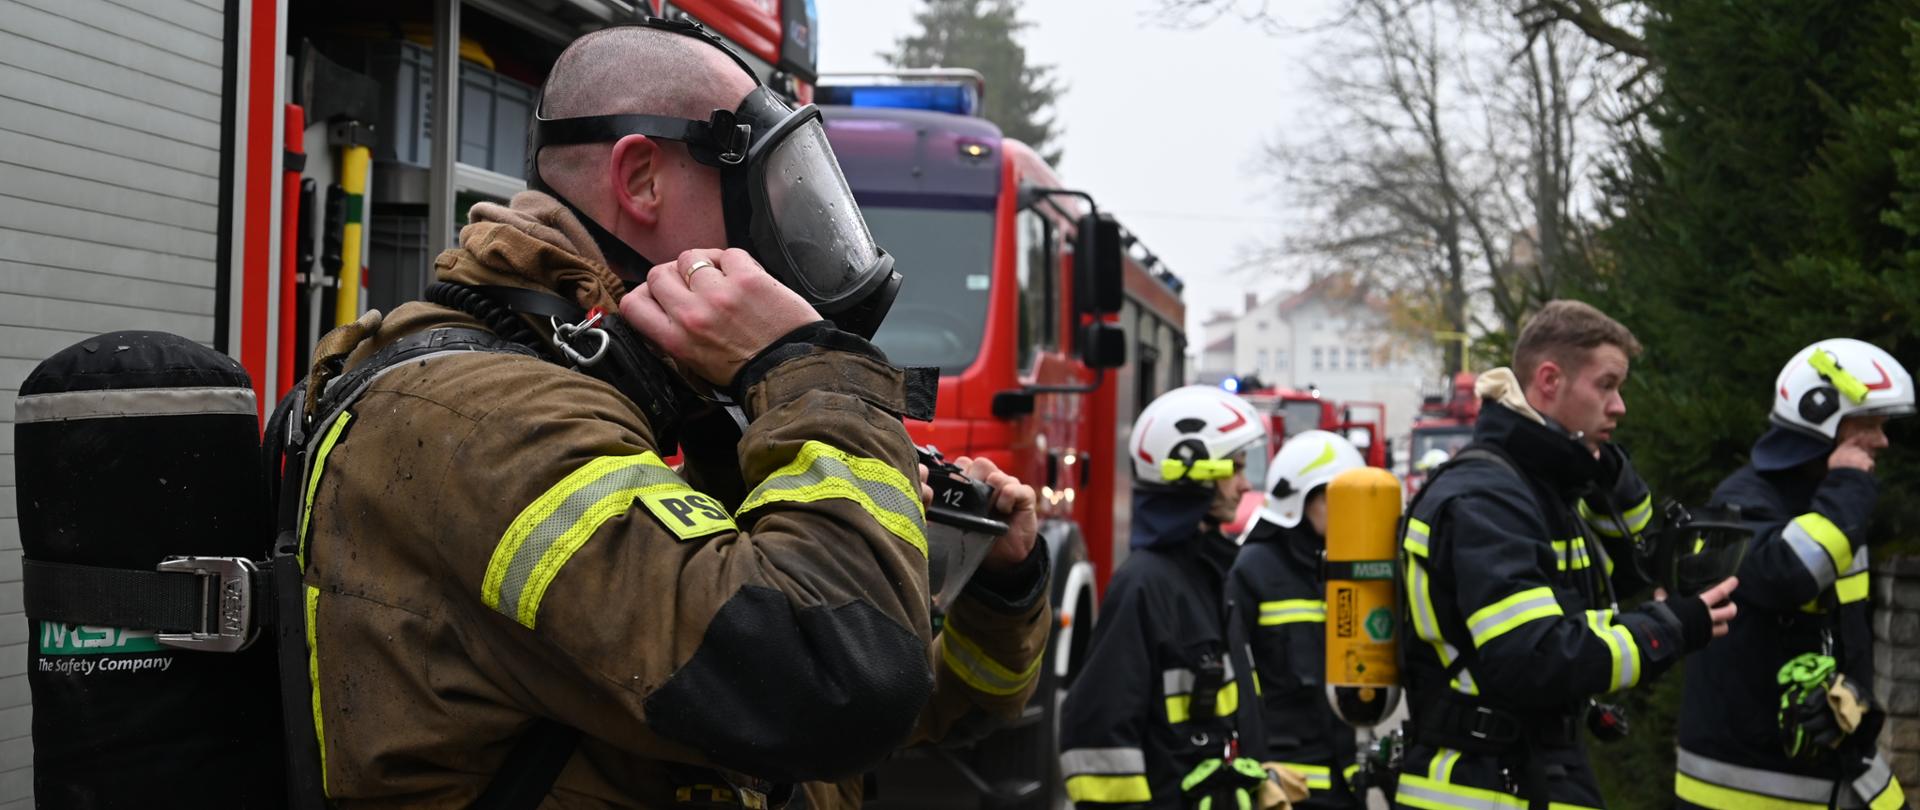 Po lewej stronie strażak ubiera maskę do aparatu powietrznego, ubrany jest w ubranie specjalne na plecach ma butlę z powietrzem, po prawej stronie stoi czterech strażaków, w mundurach specjalnych, jeden ma założony noszak z butlą w tle widać pojazdy pożarnicze.